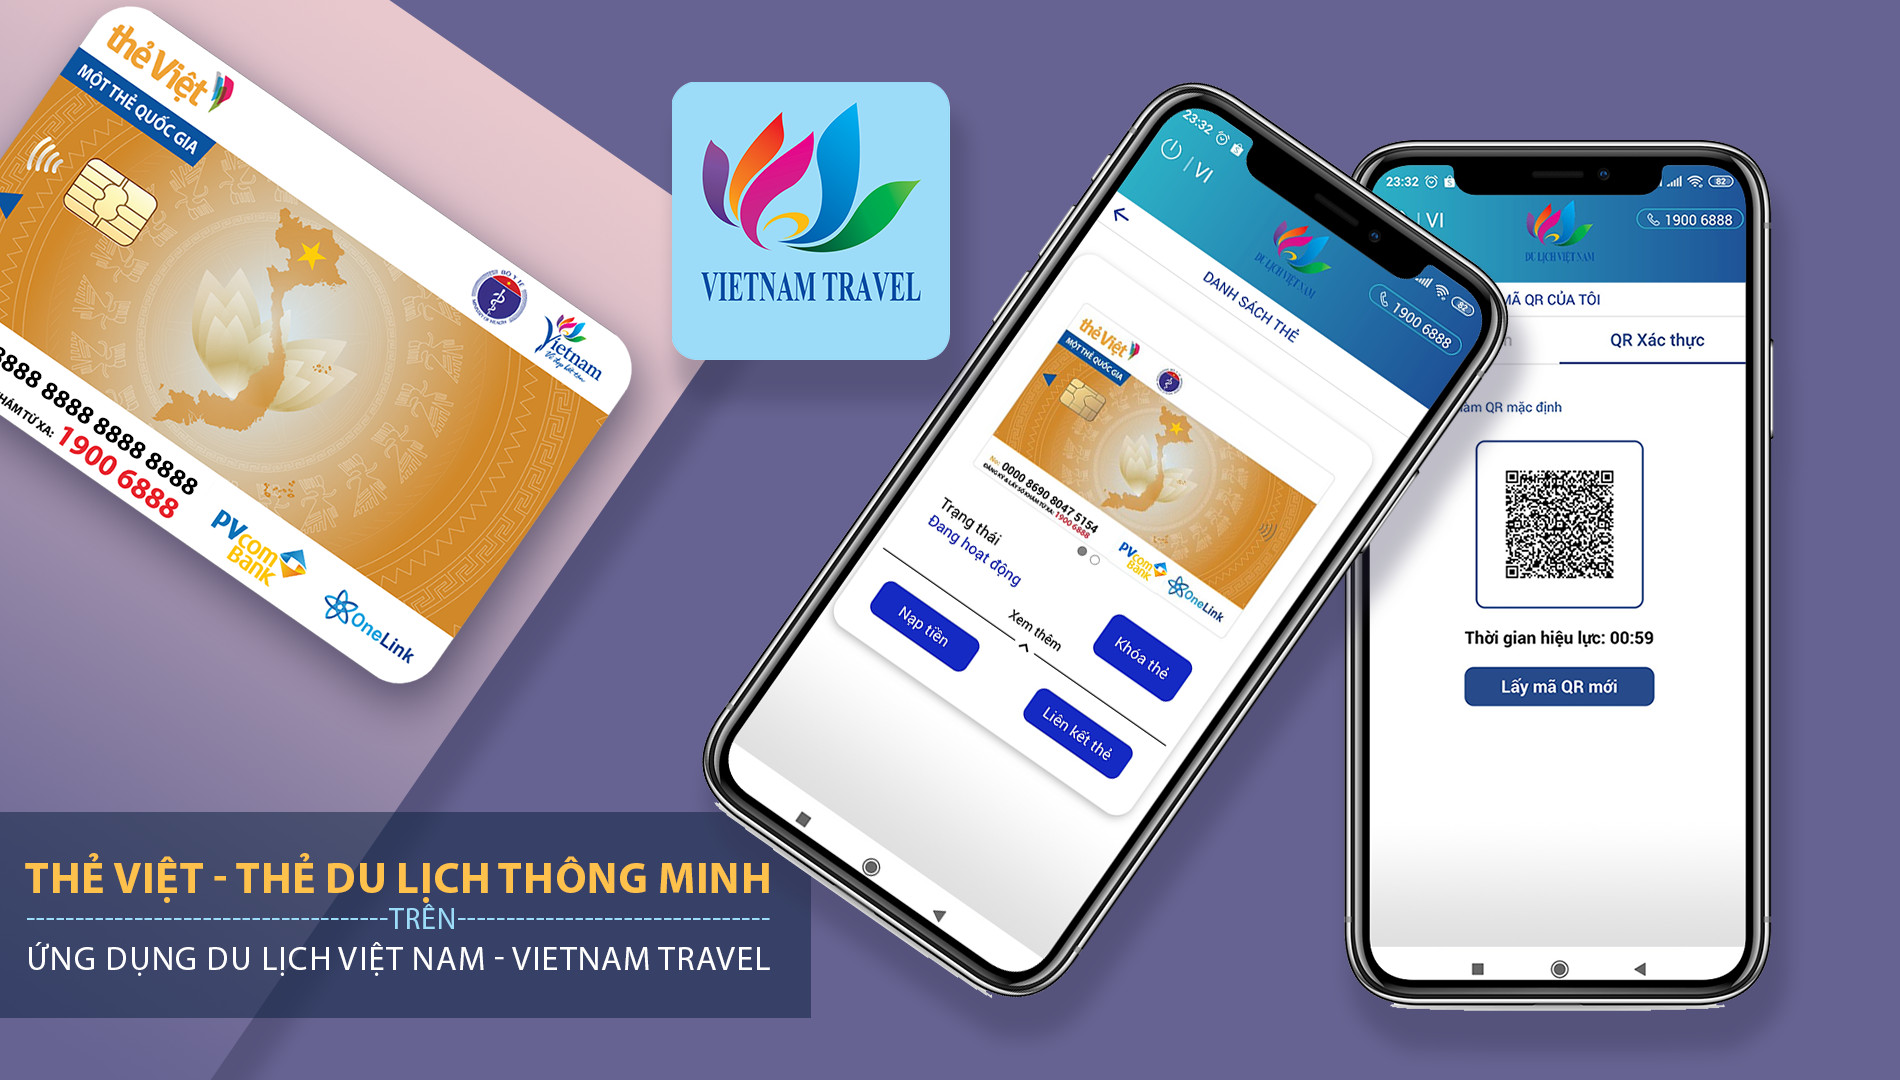 Thẻ Việt - Thẻ Du lịch thông minh là sản phẩm do Trung tâm Thông tin du lịch (Tổng cục Du lịch) phối hợp với các đơn vị liên quan phát hành